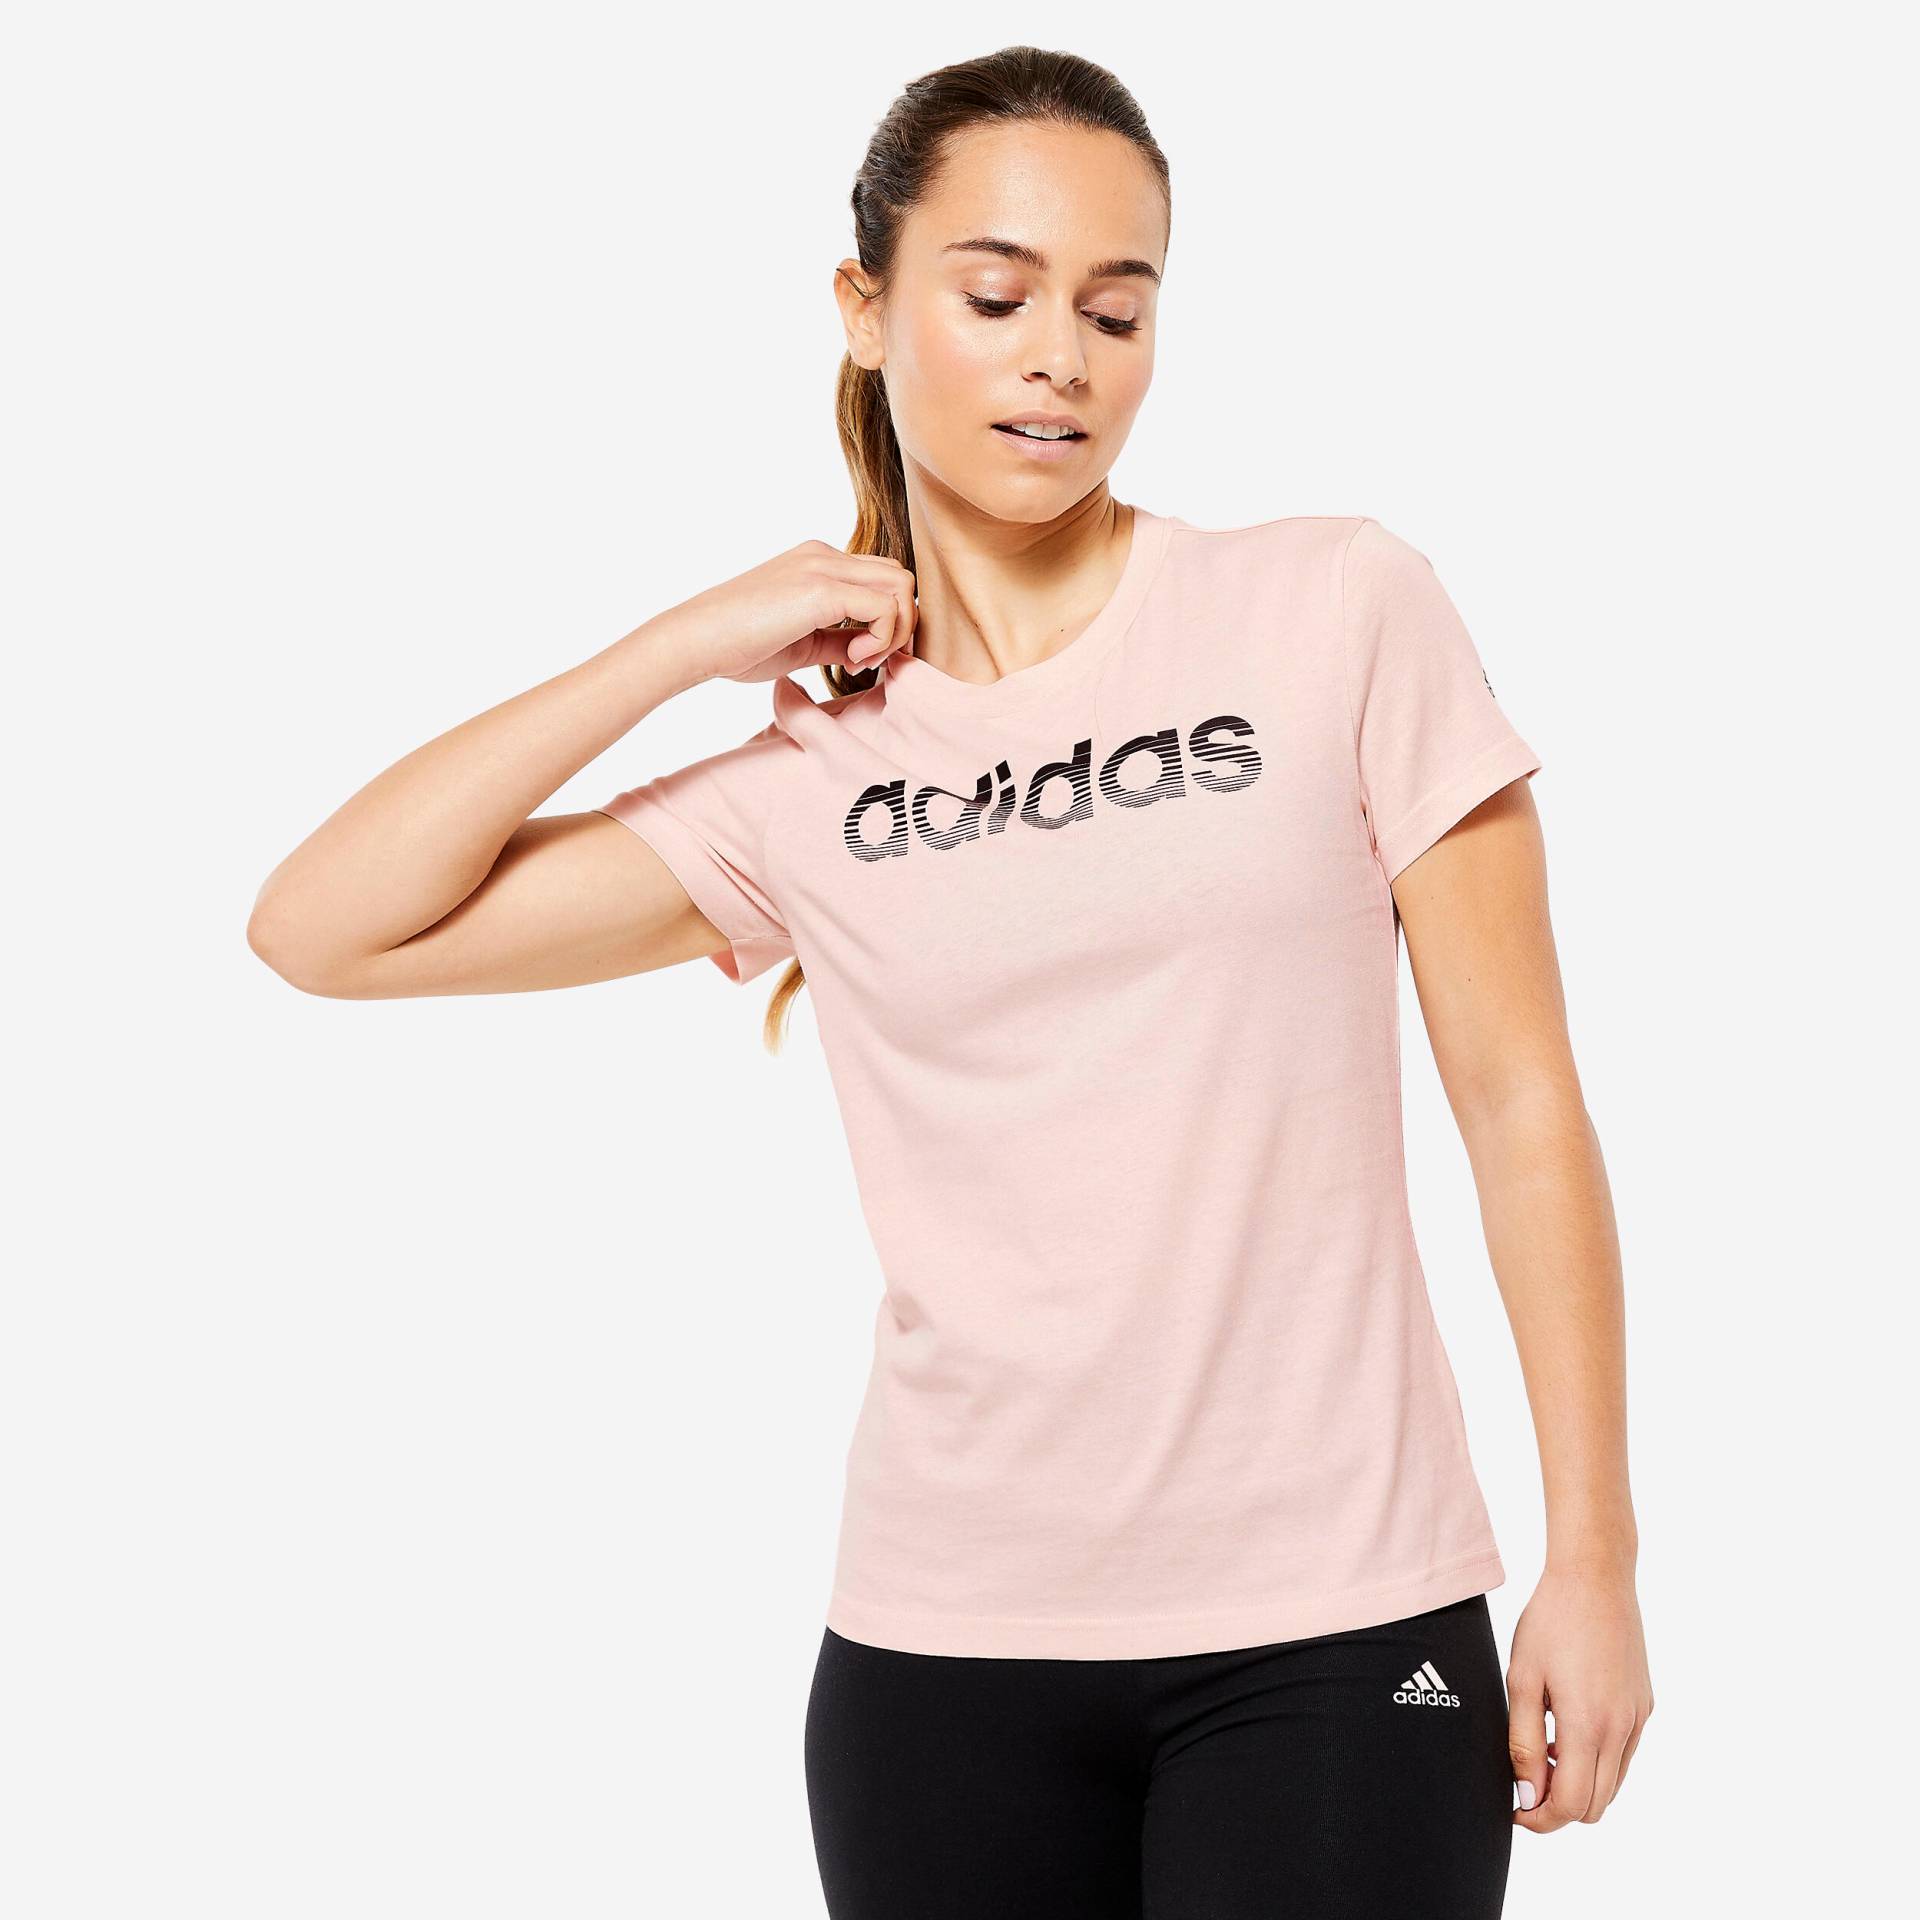 ADIDAS T-Shirt Damen - rosa von Adidas